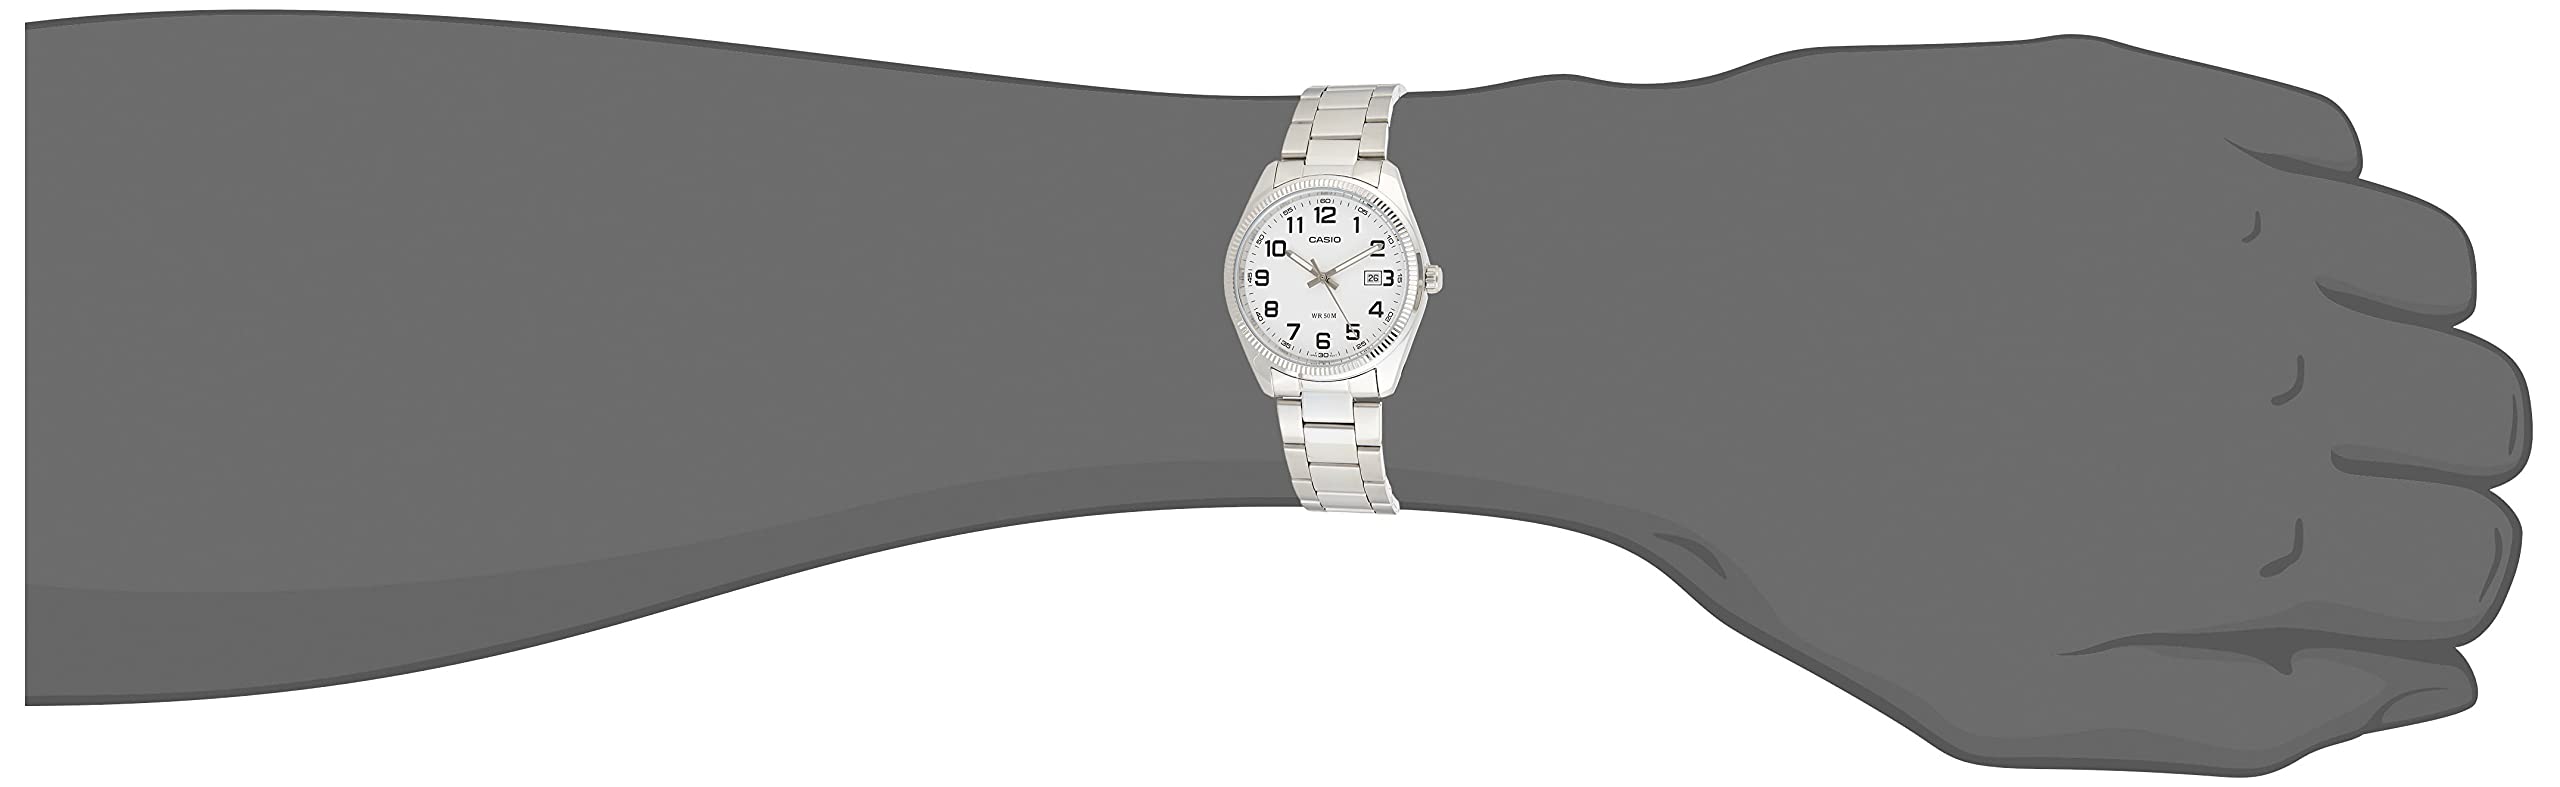 Casio General Men's Watches Standard Analog MTP-1302D-7BVDF - WW